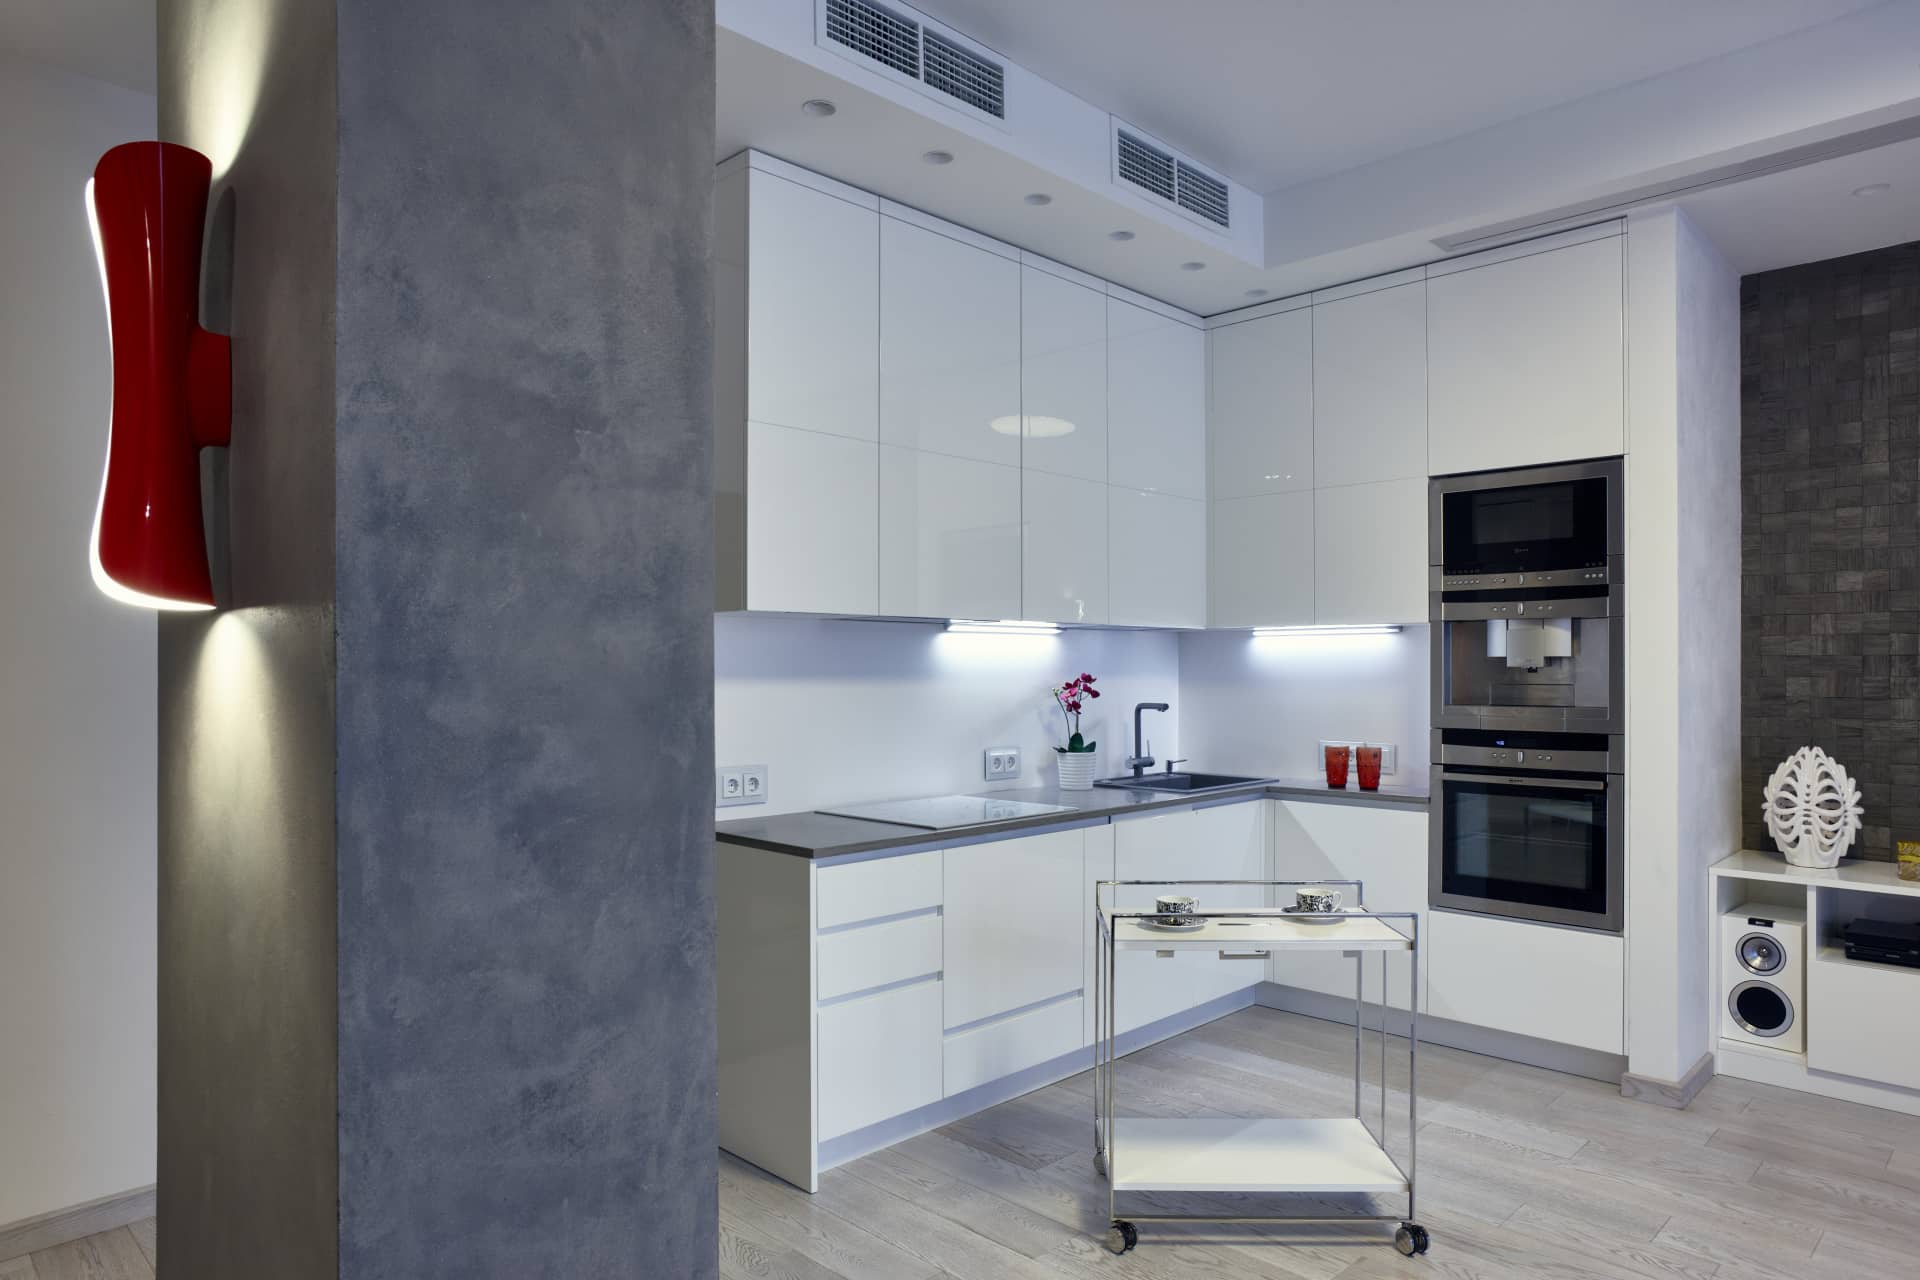 Кухня современного белого цвета с глянцевыми поверхностями